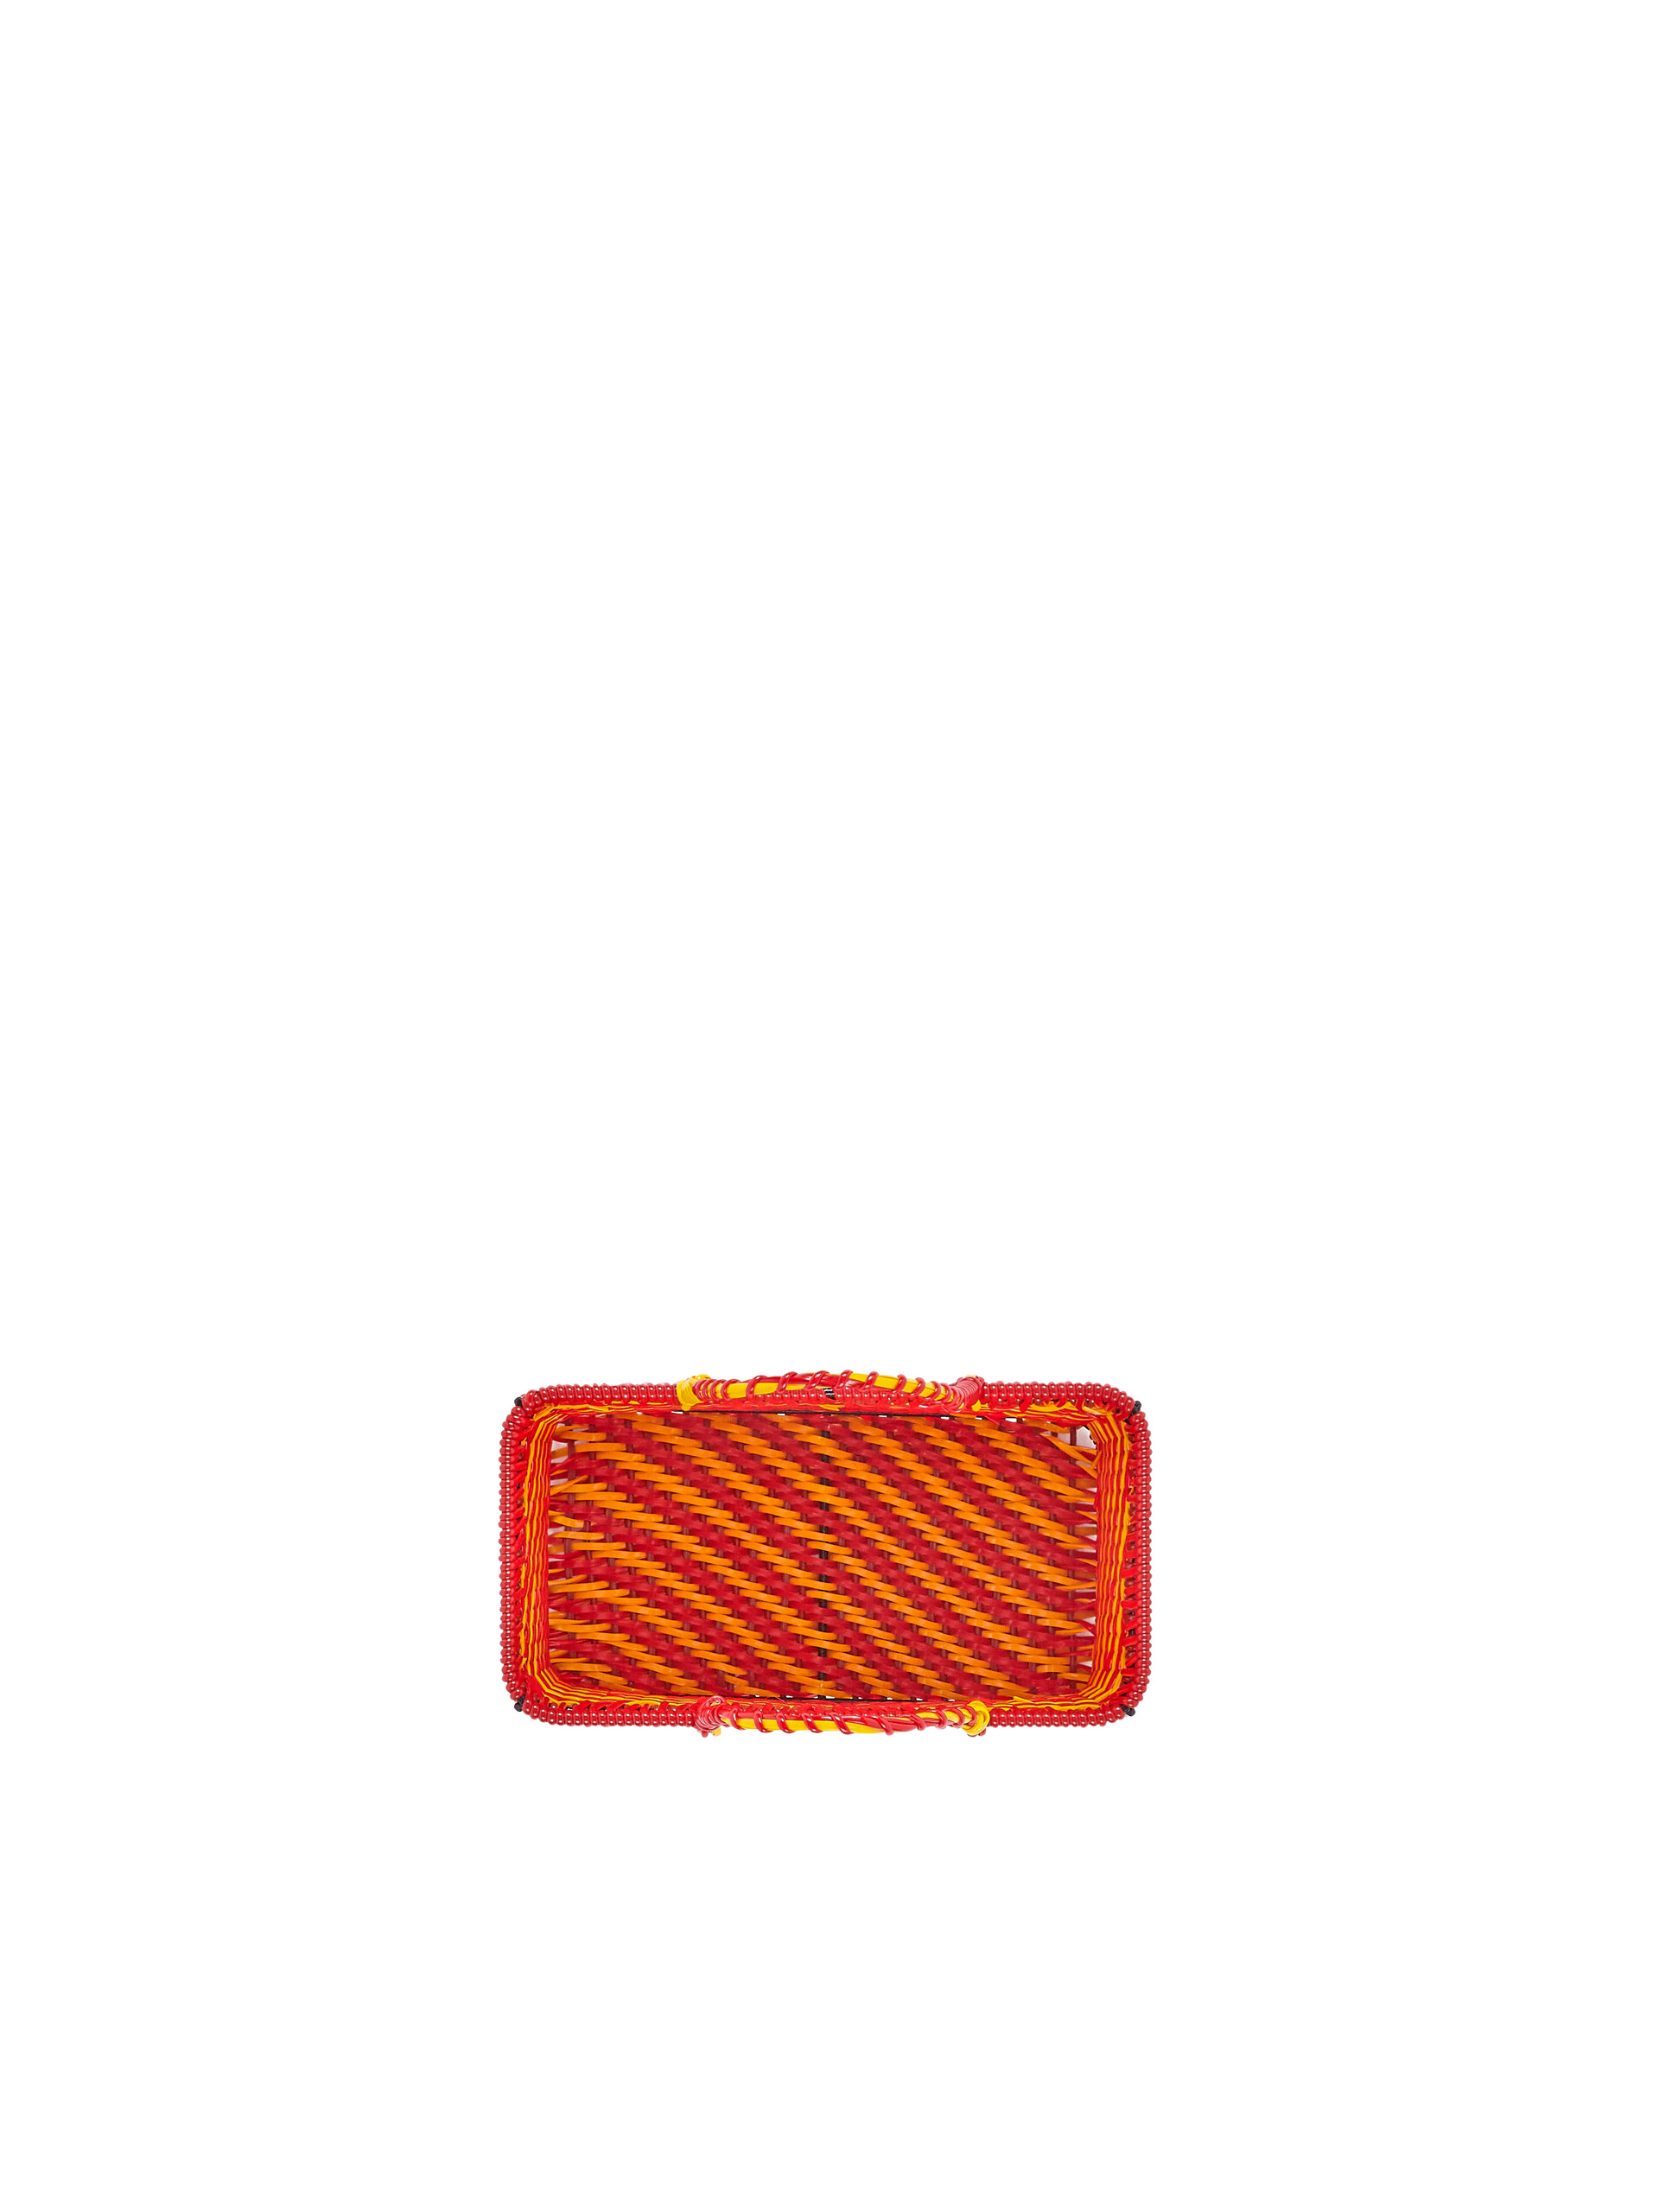 Cesto MARNI MARKET arancio e rosso - Accessori - Image 4